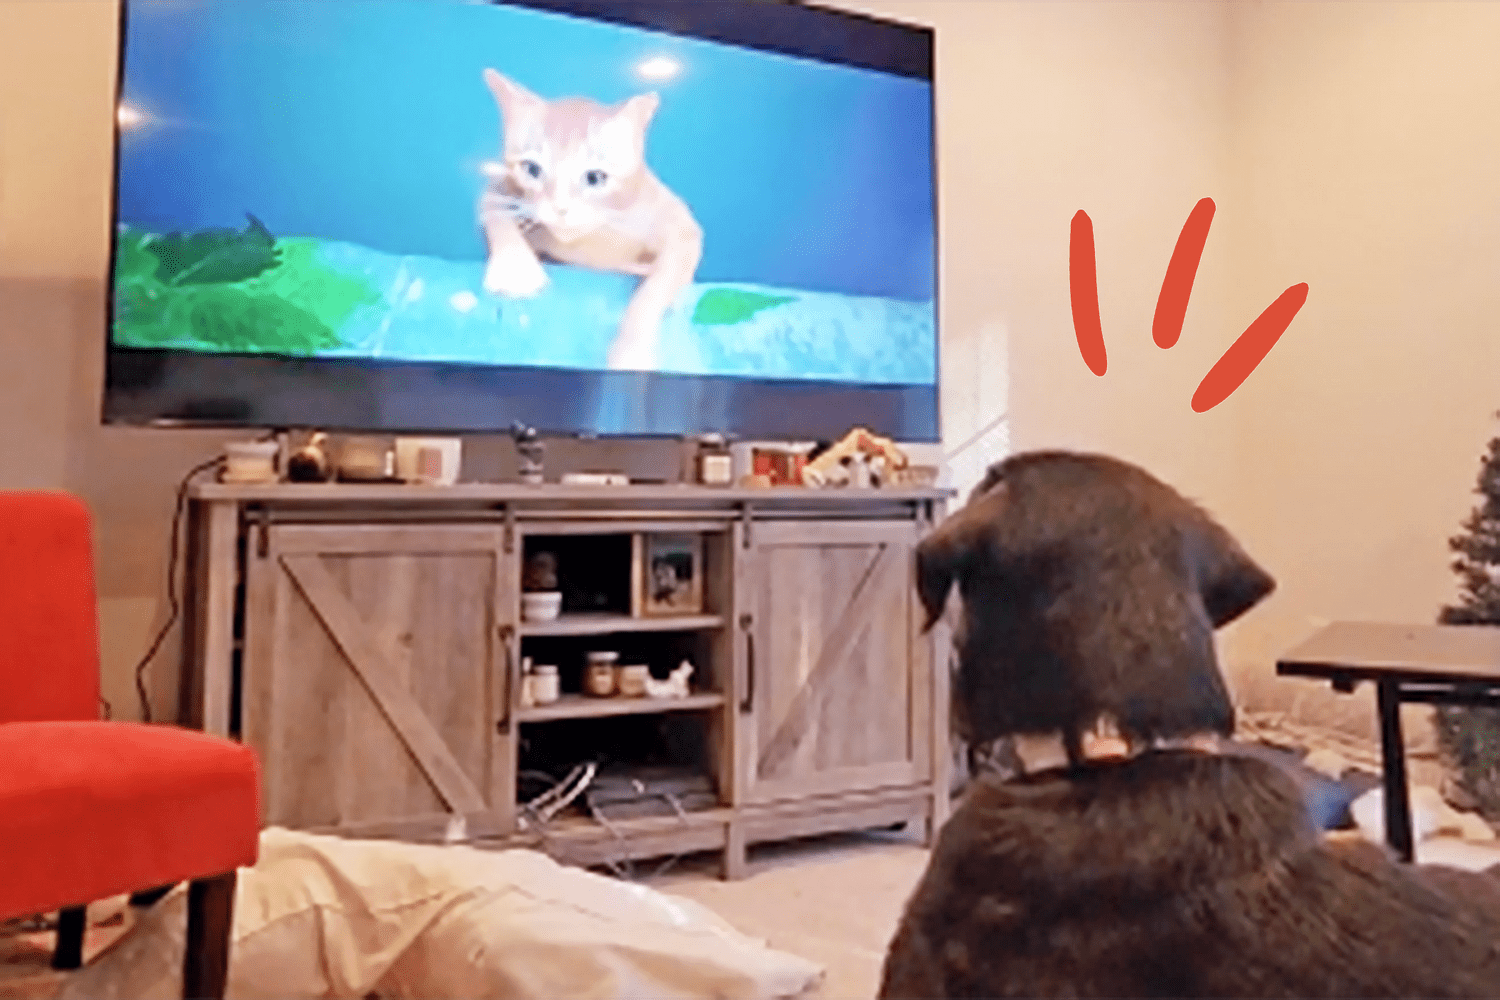 dog watching cartoon of falling cat he wants to rescue